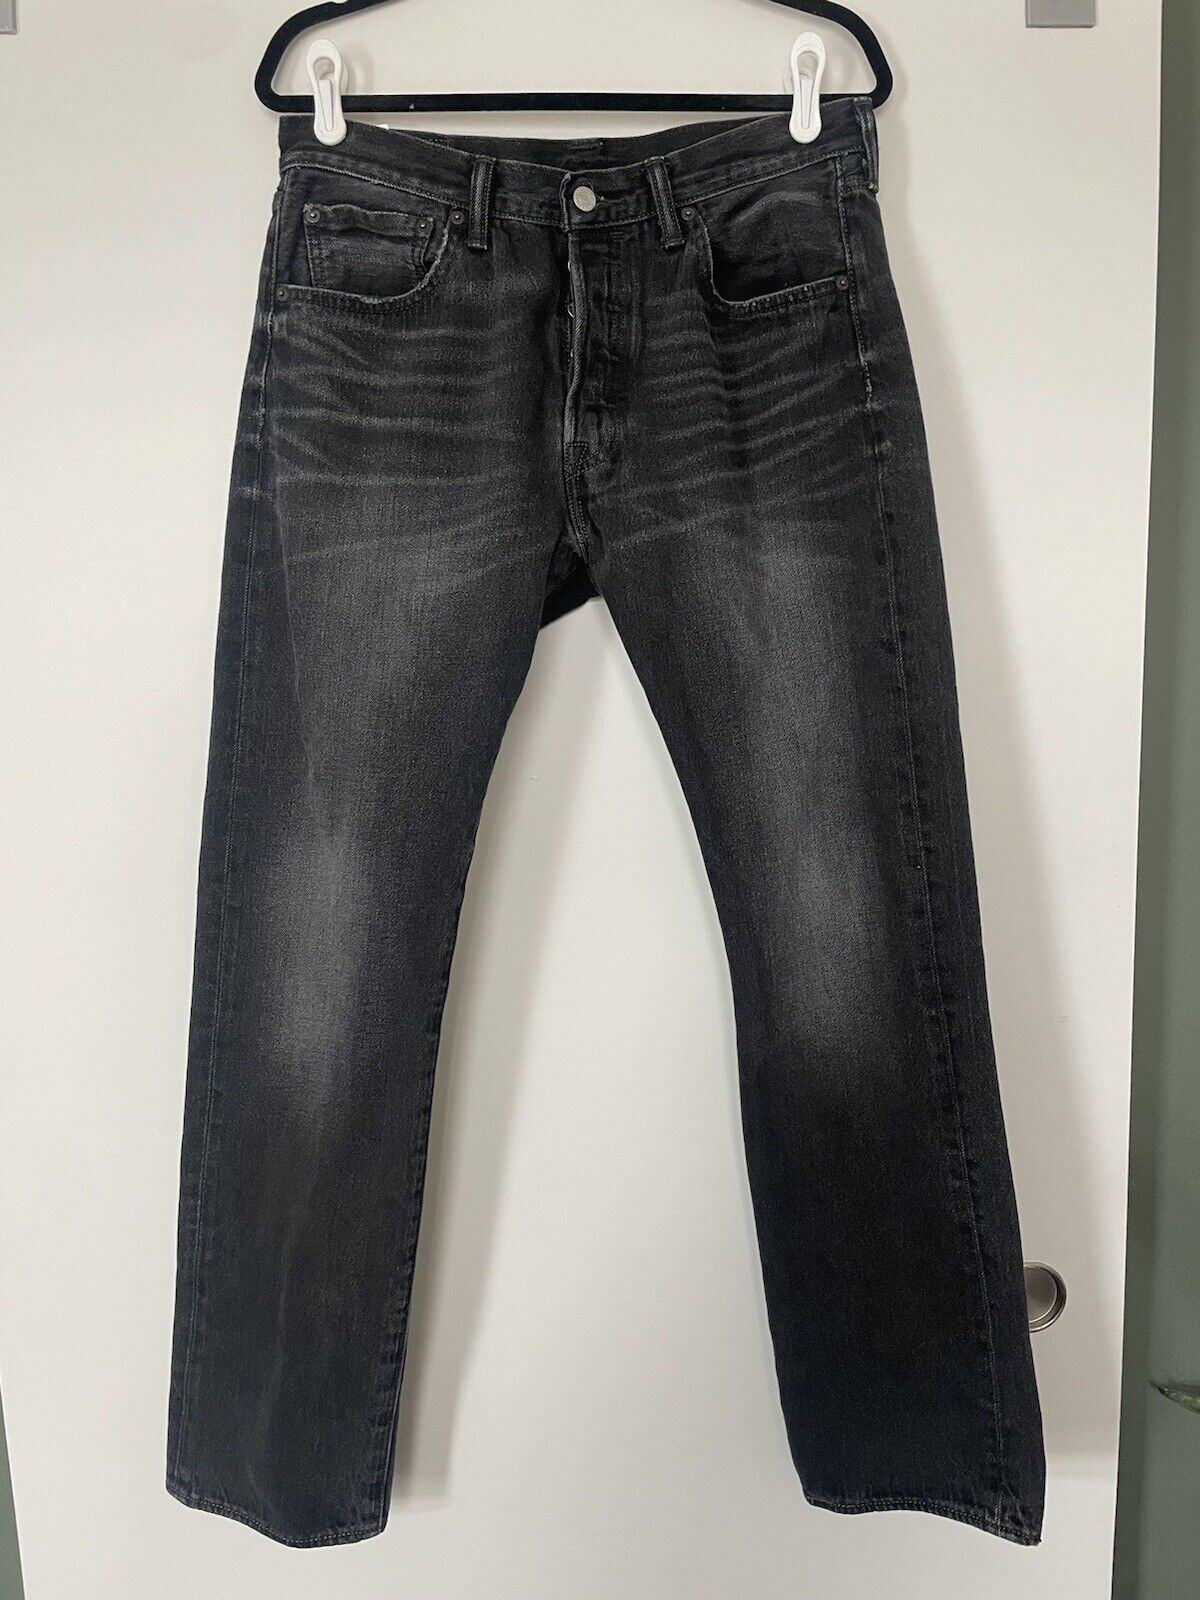 Levi’s 501 Washed Black Denim Jeans 33x32 - image 1